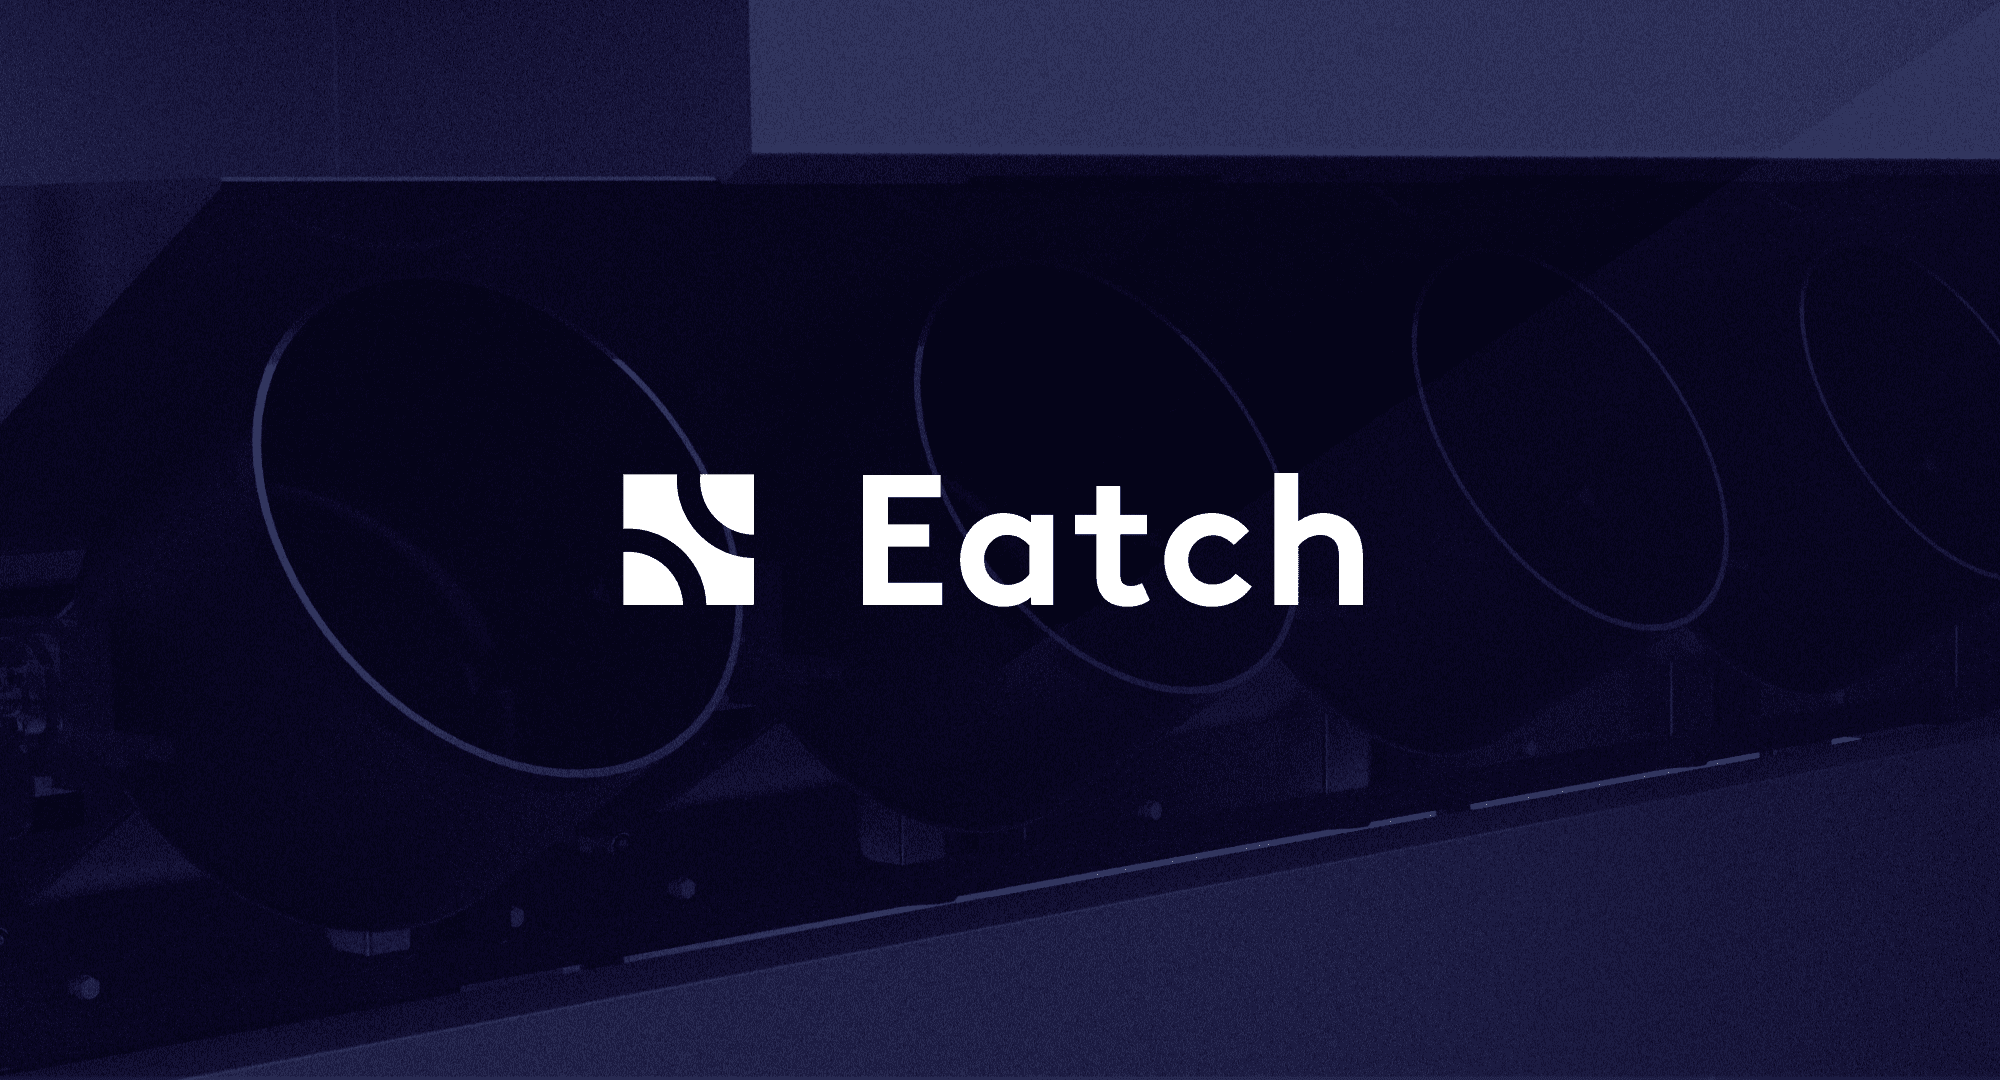 Logo eatch